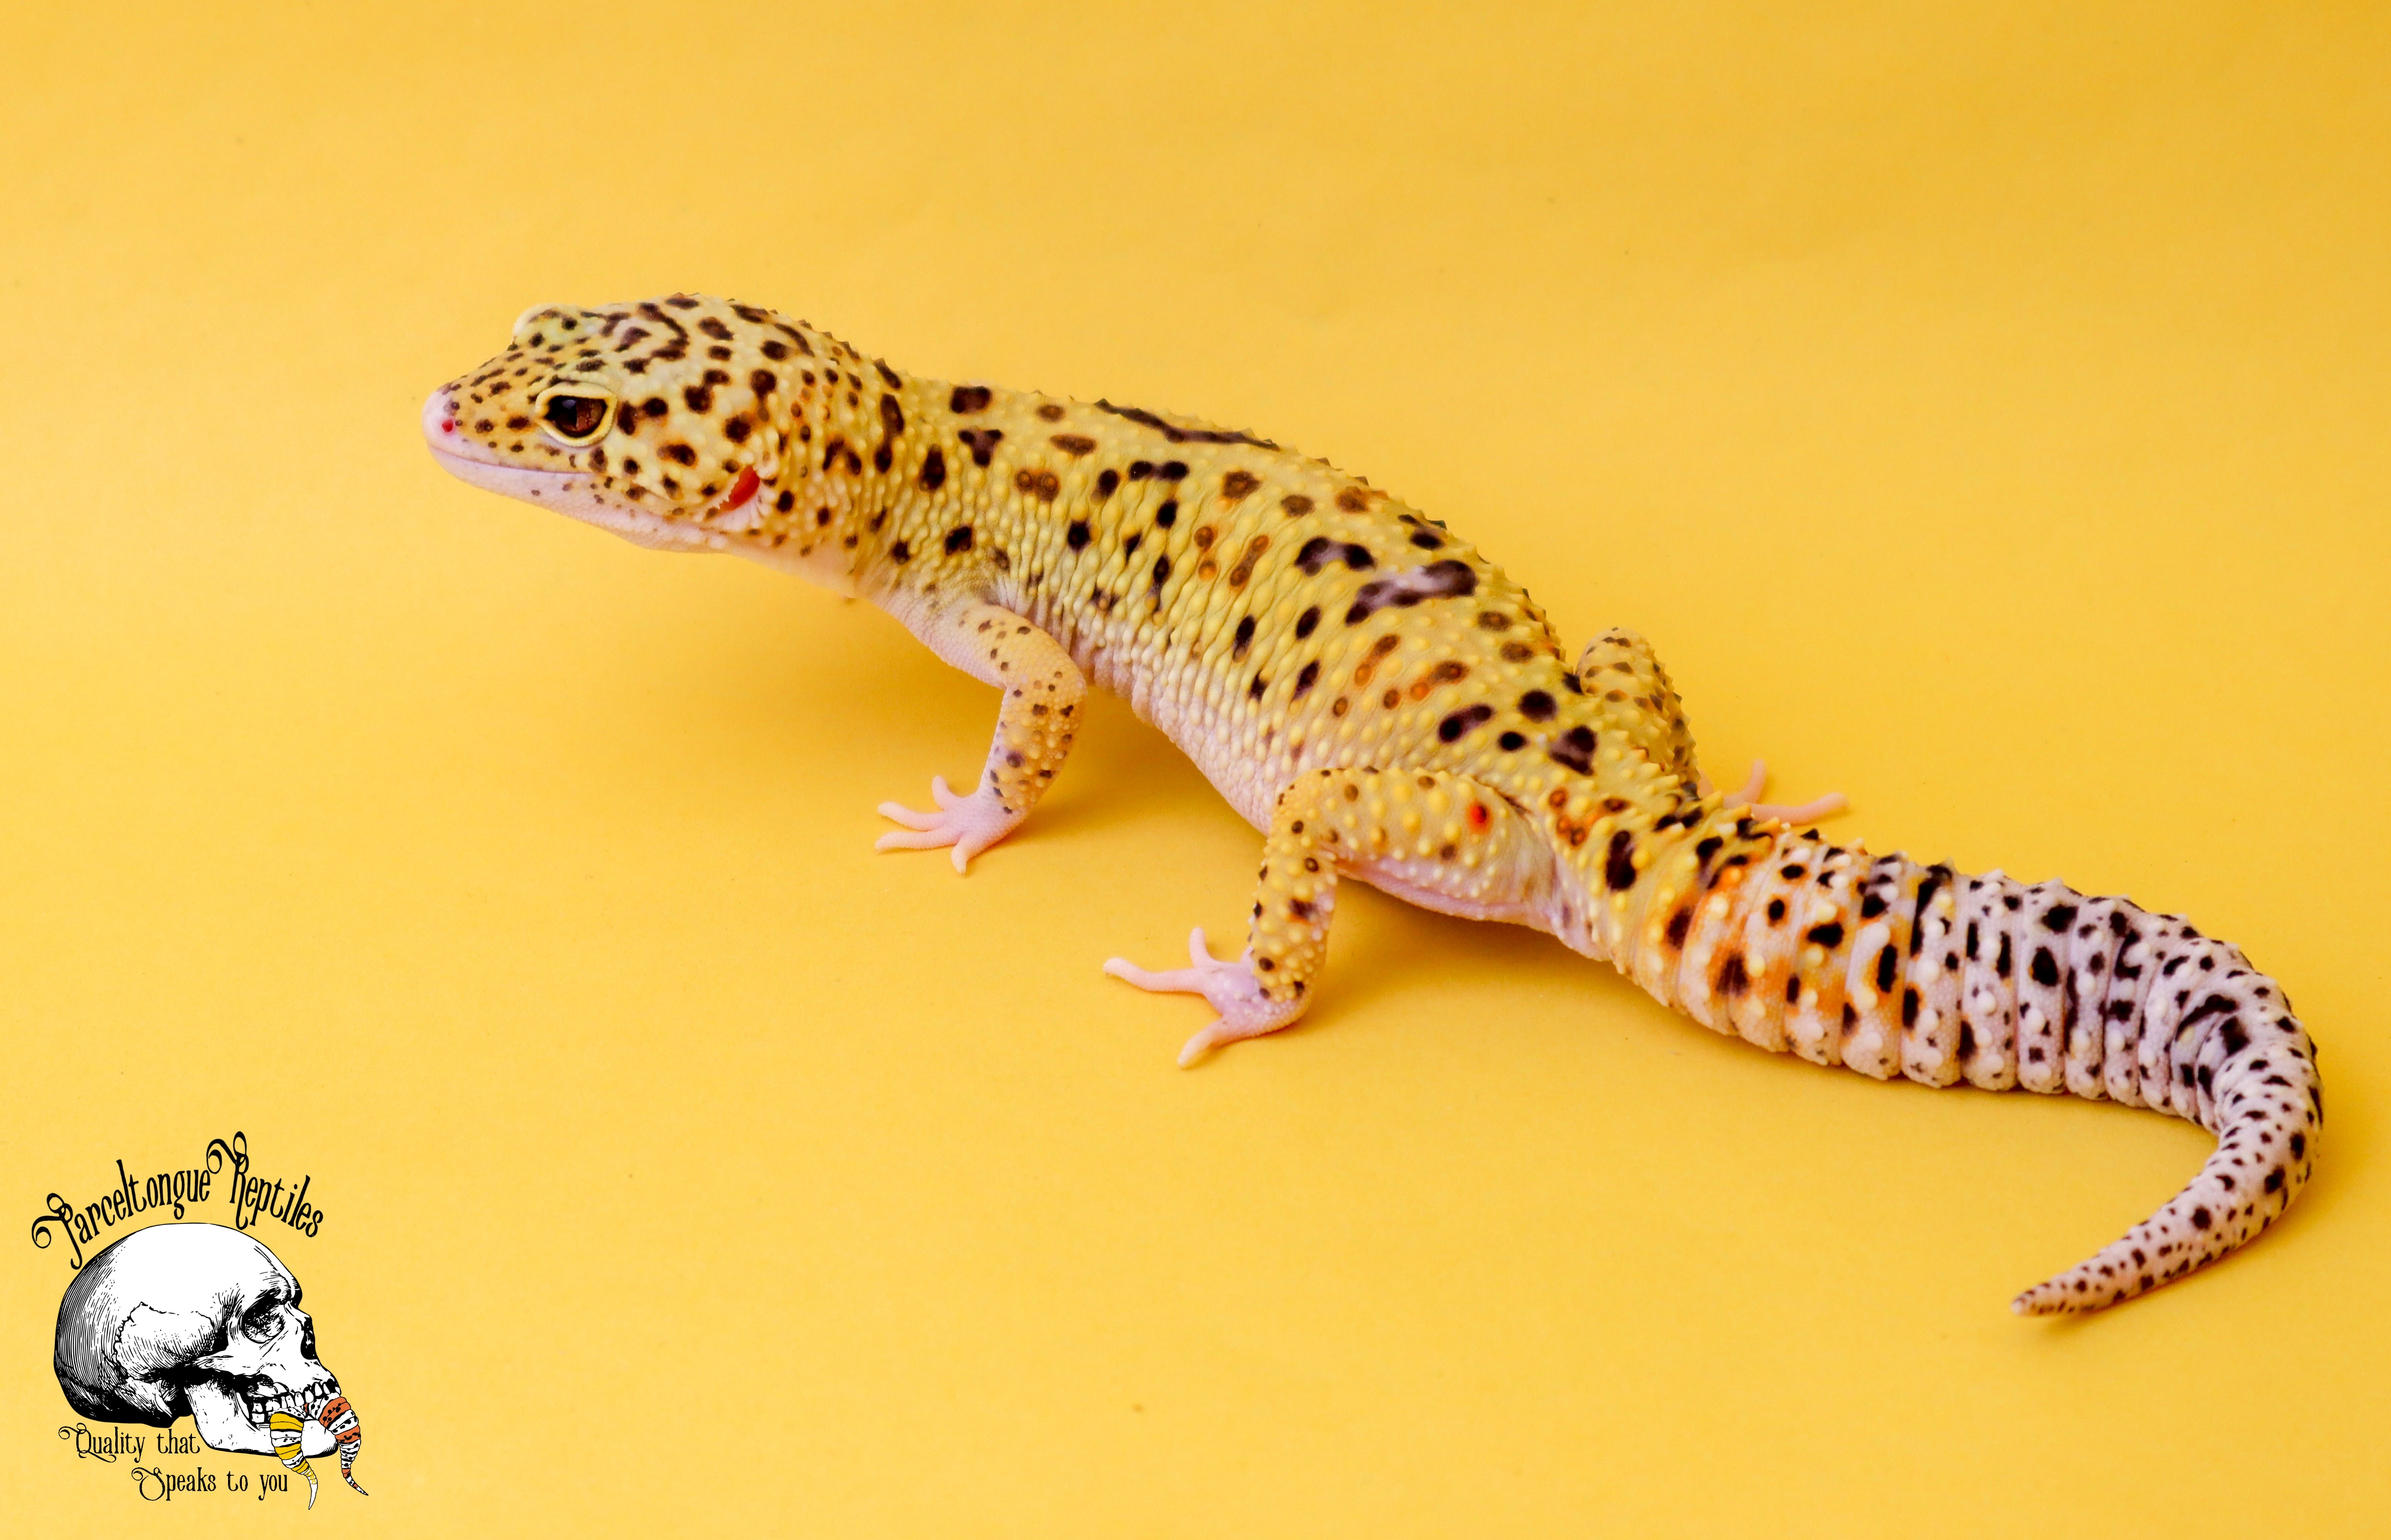 Eclipse Leopard Gecko by Parceltongue_Reptiles